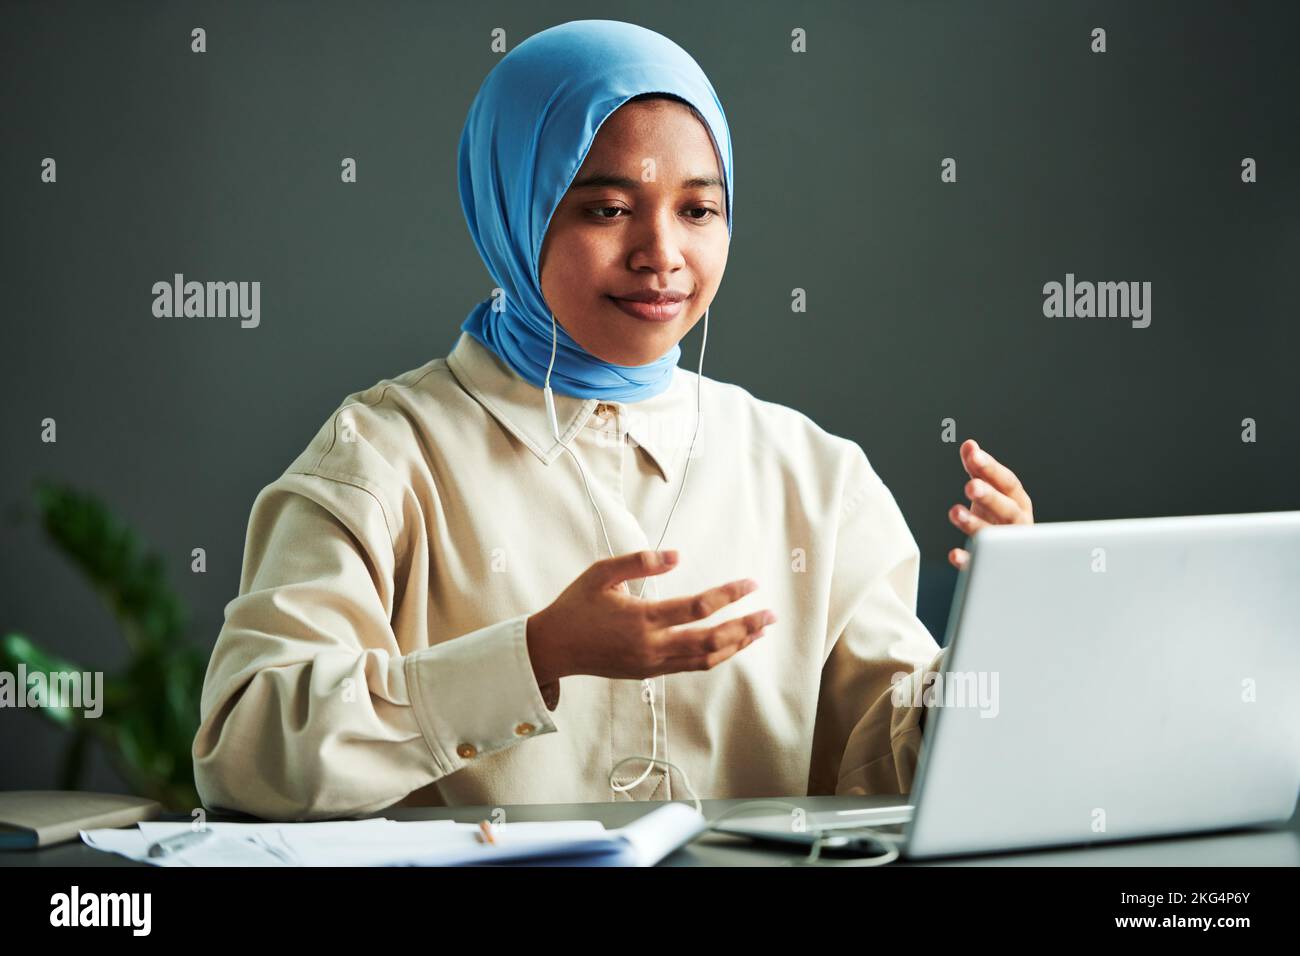 Junge selbstbewusste muslimische Frau in Casualwear und blauem Hijab, die während des Online-Unterrichts vor dem Laptop etwas erklärt Stockfoto